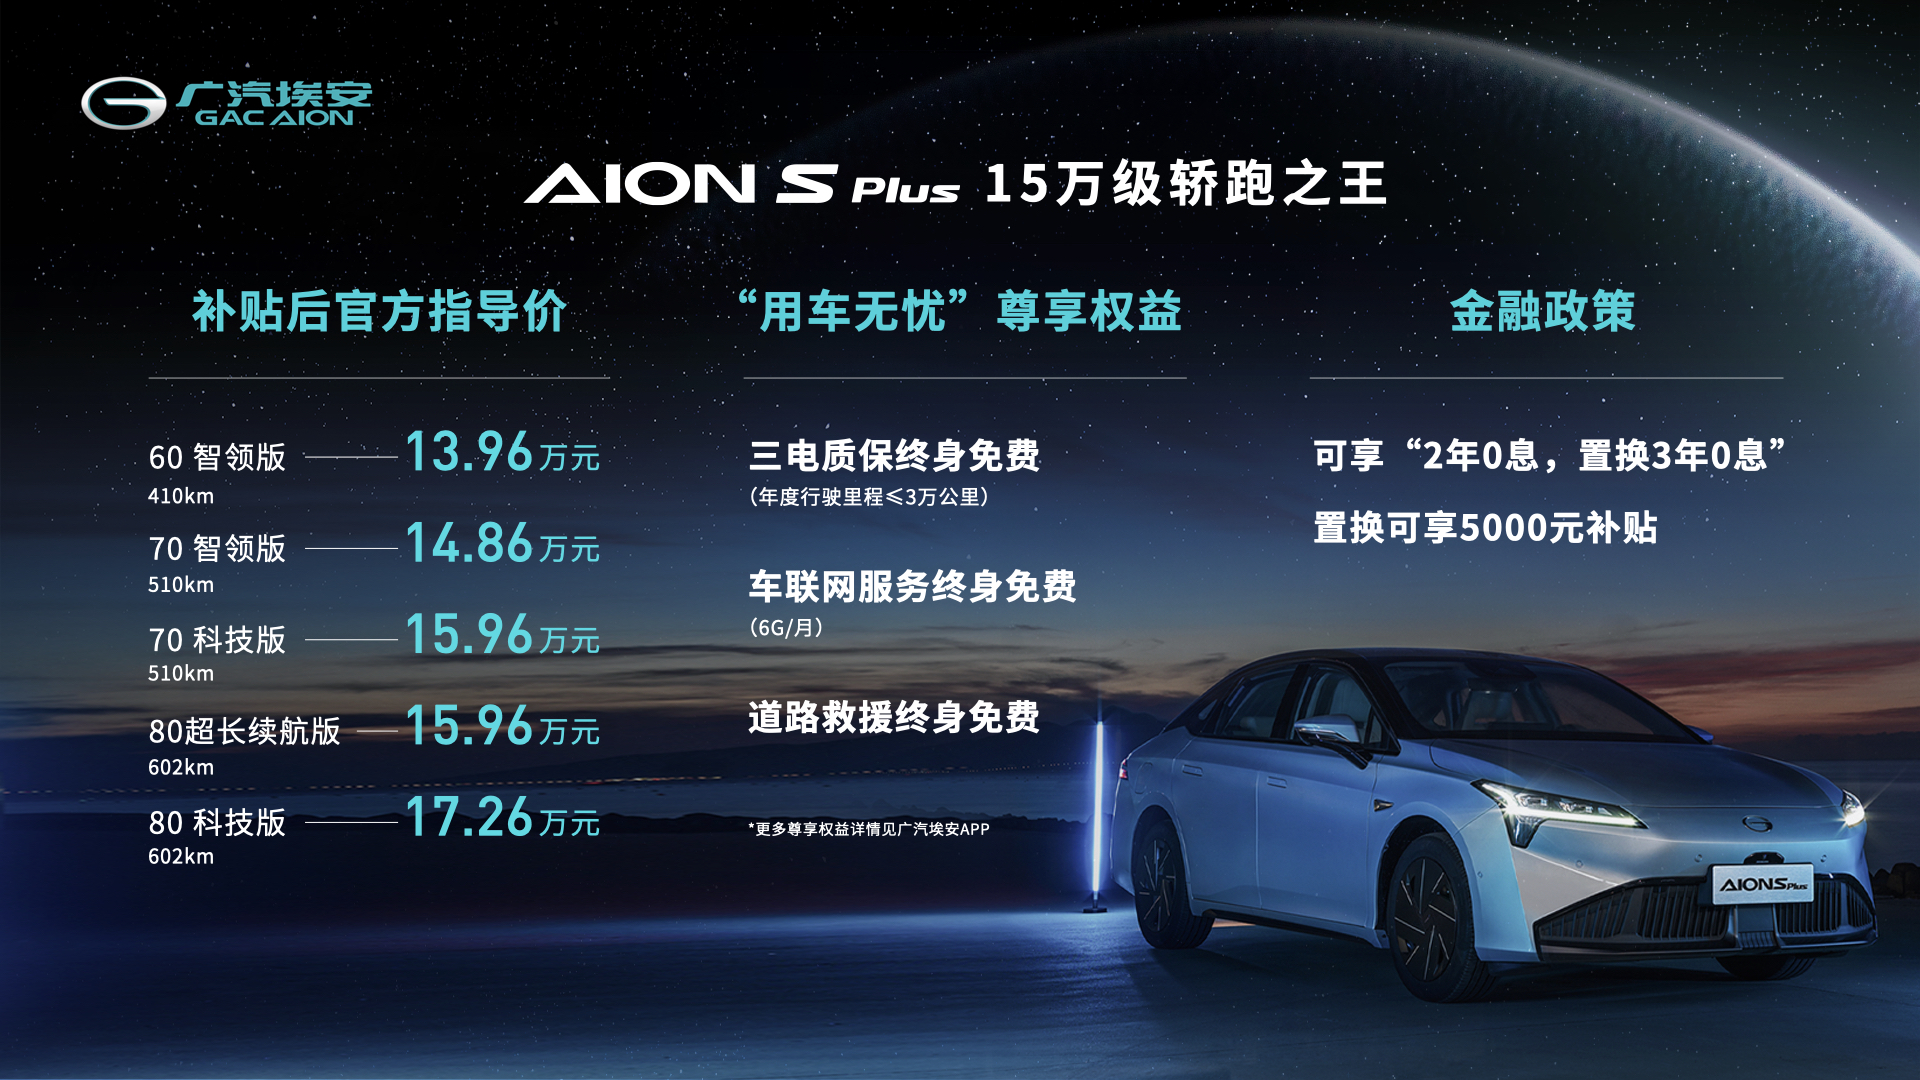 13.96萬元起售，多項升級不加價！廣汽埃安AION S Plus上市